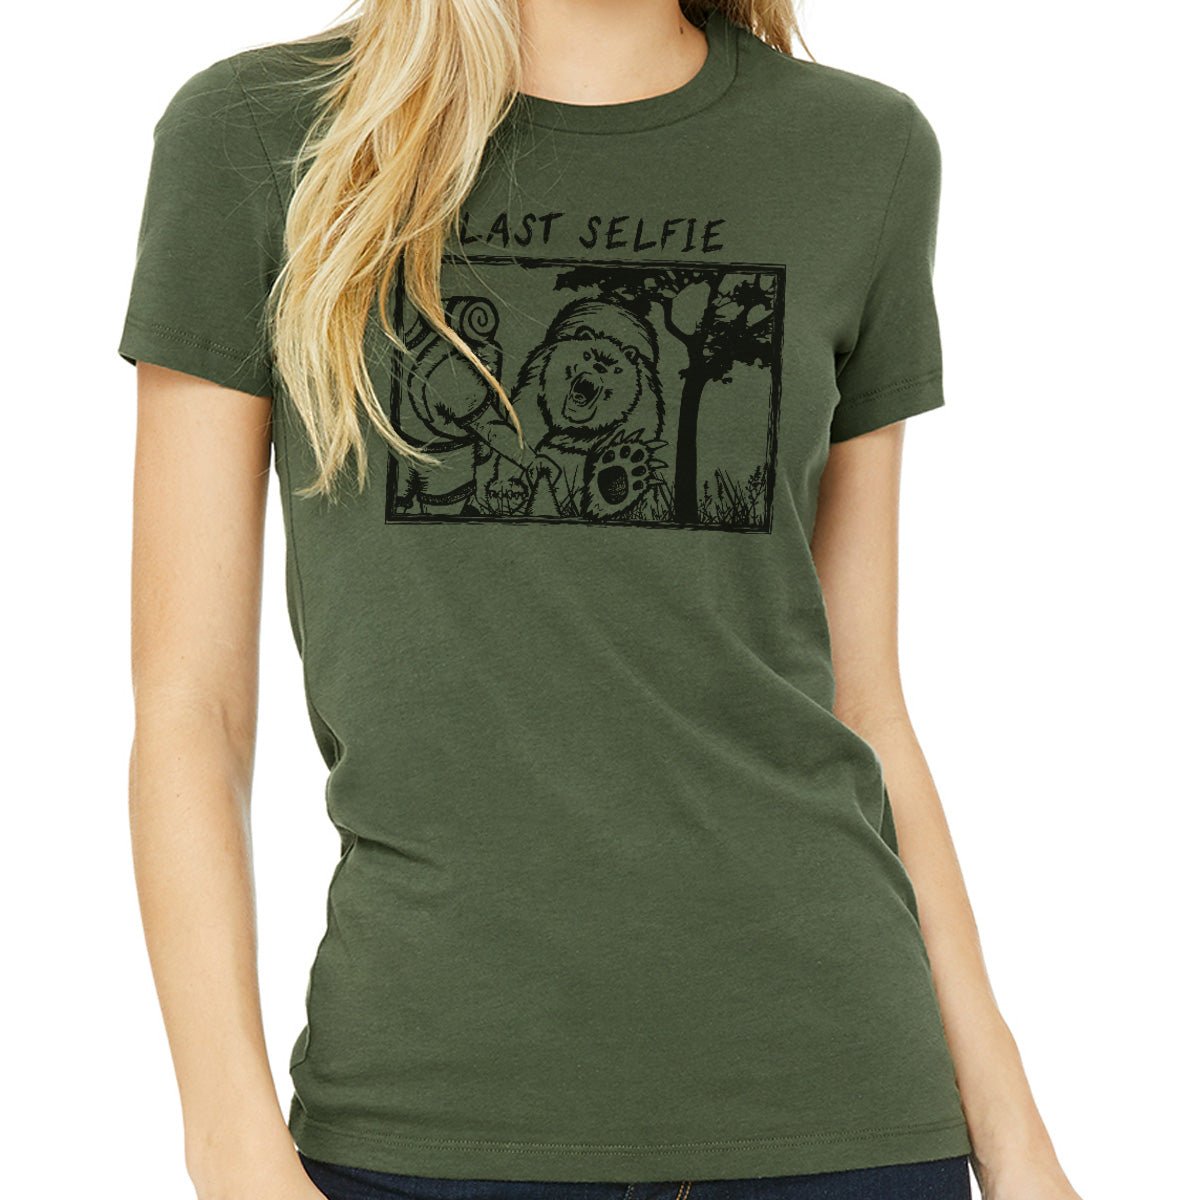 Last Selfie Ladies T-Shirt - Get Deerty